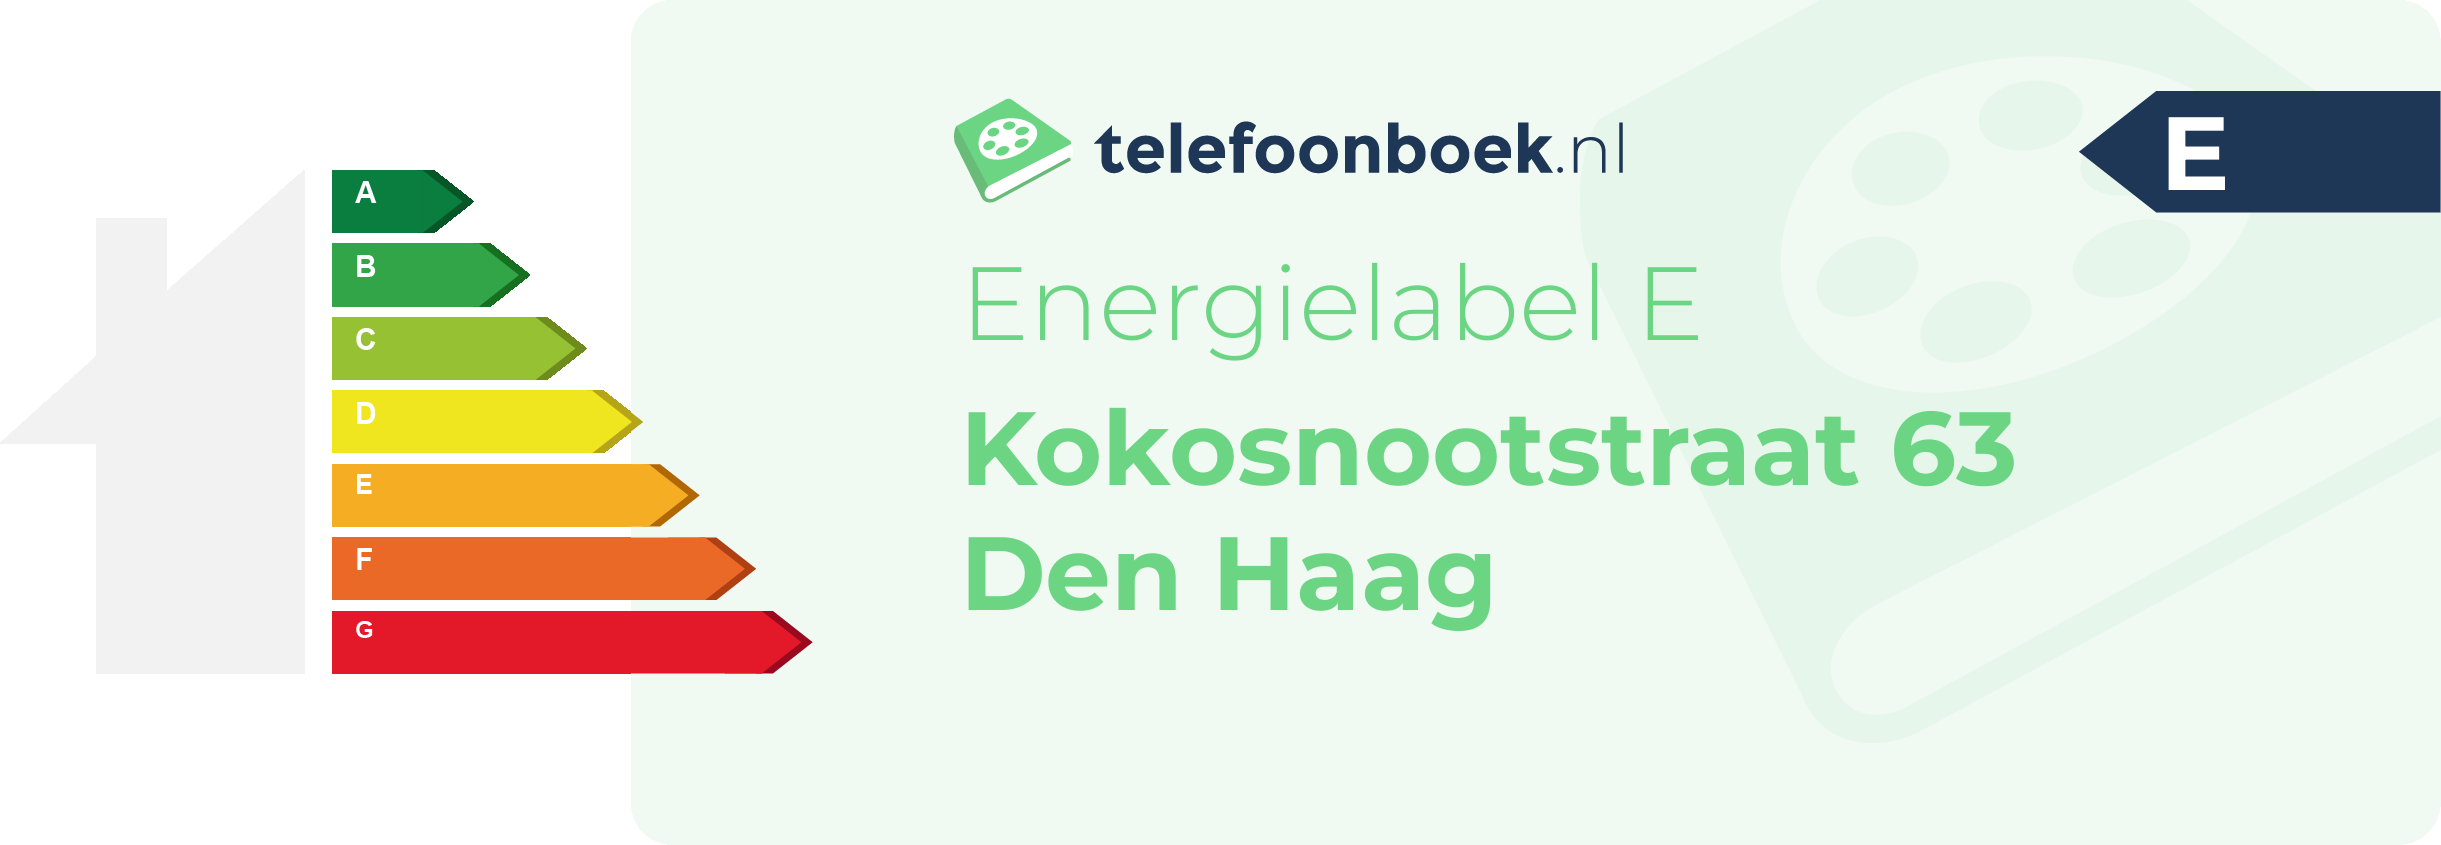 Energielabel Kokosnootstraat 63 Den Haag